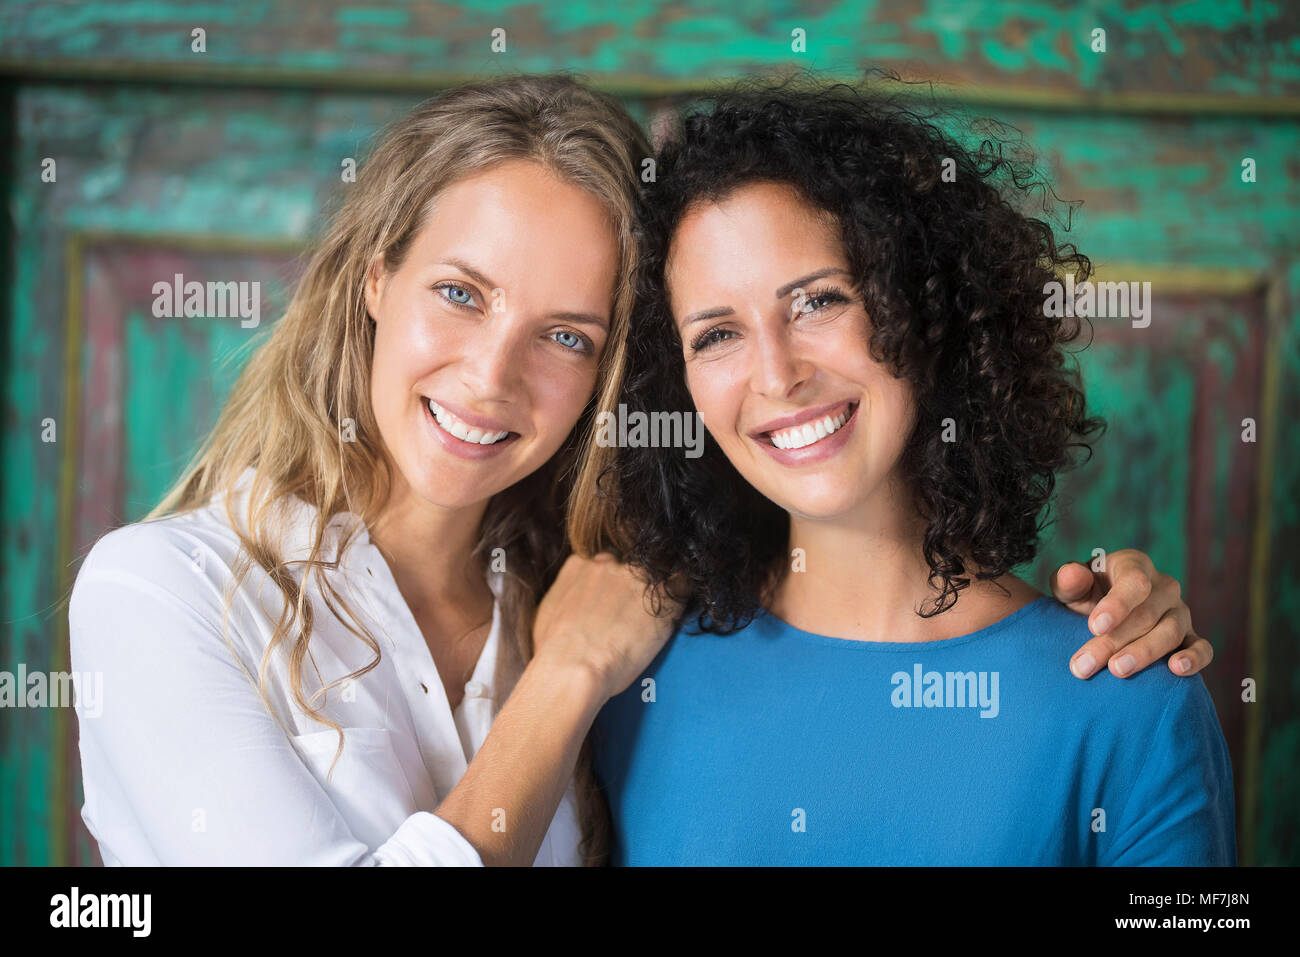 Retrato de dos mujeres sonrientes al lado Foto de stock